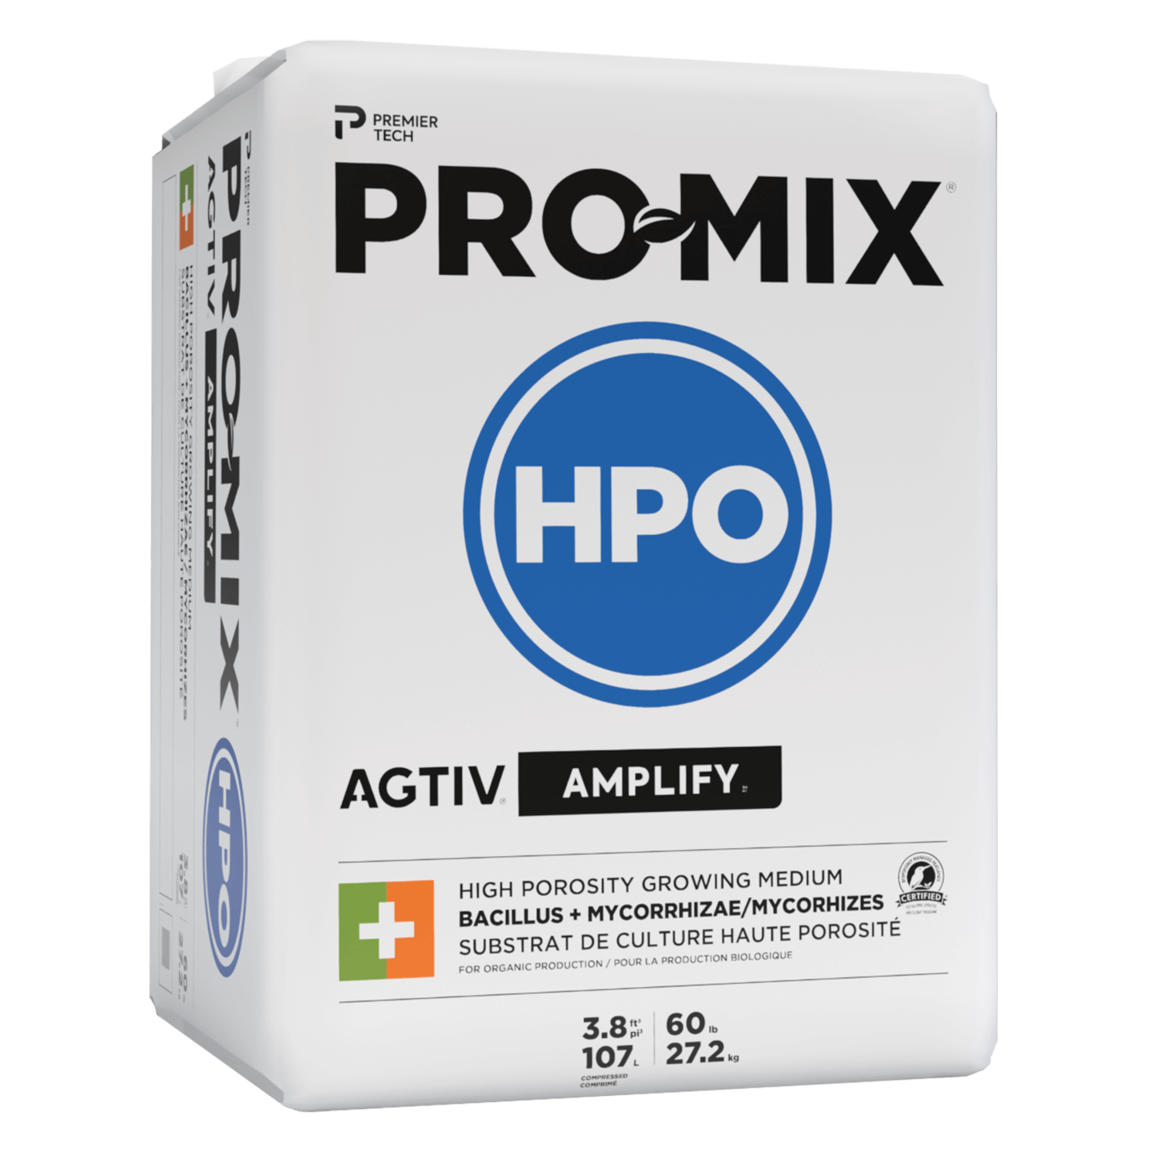 PRO-MIX HPO AGTIV AMPLIFY 3.8 cu.ft.